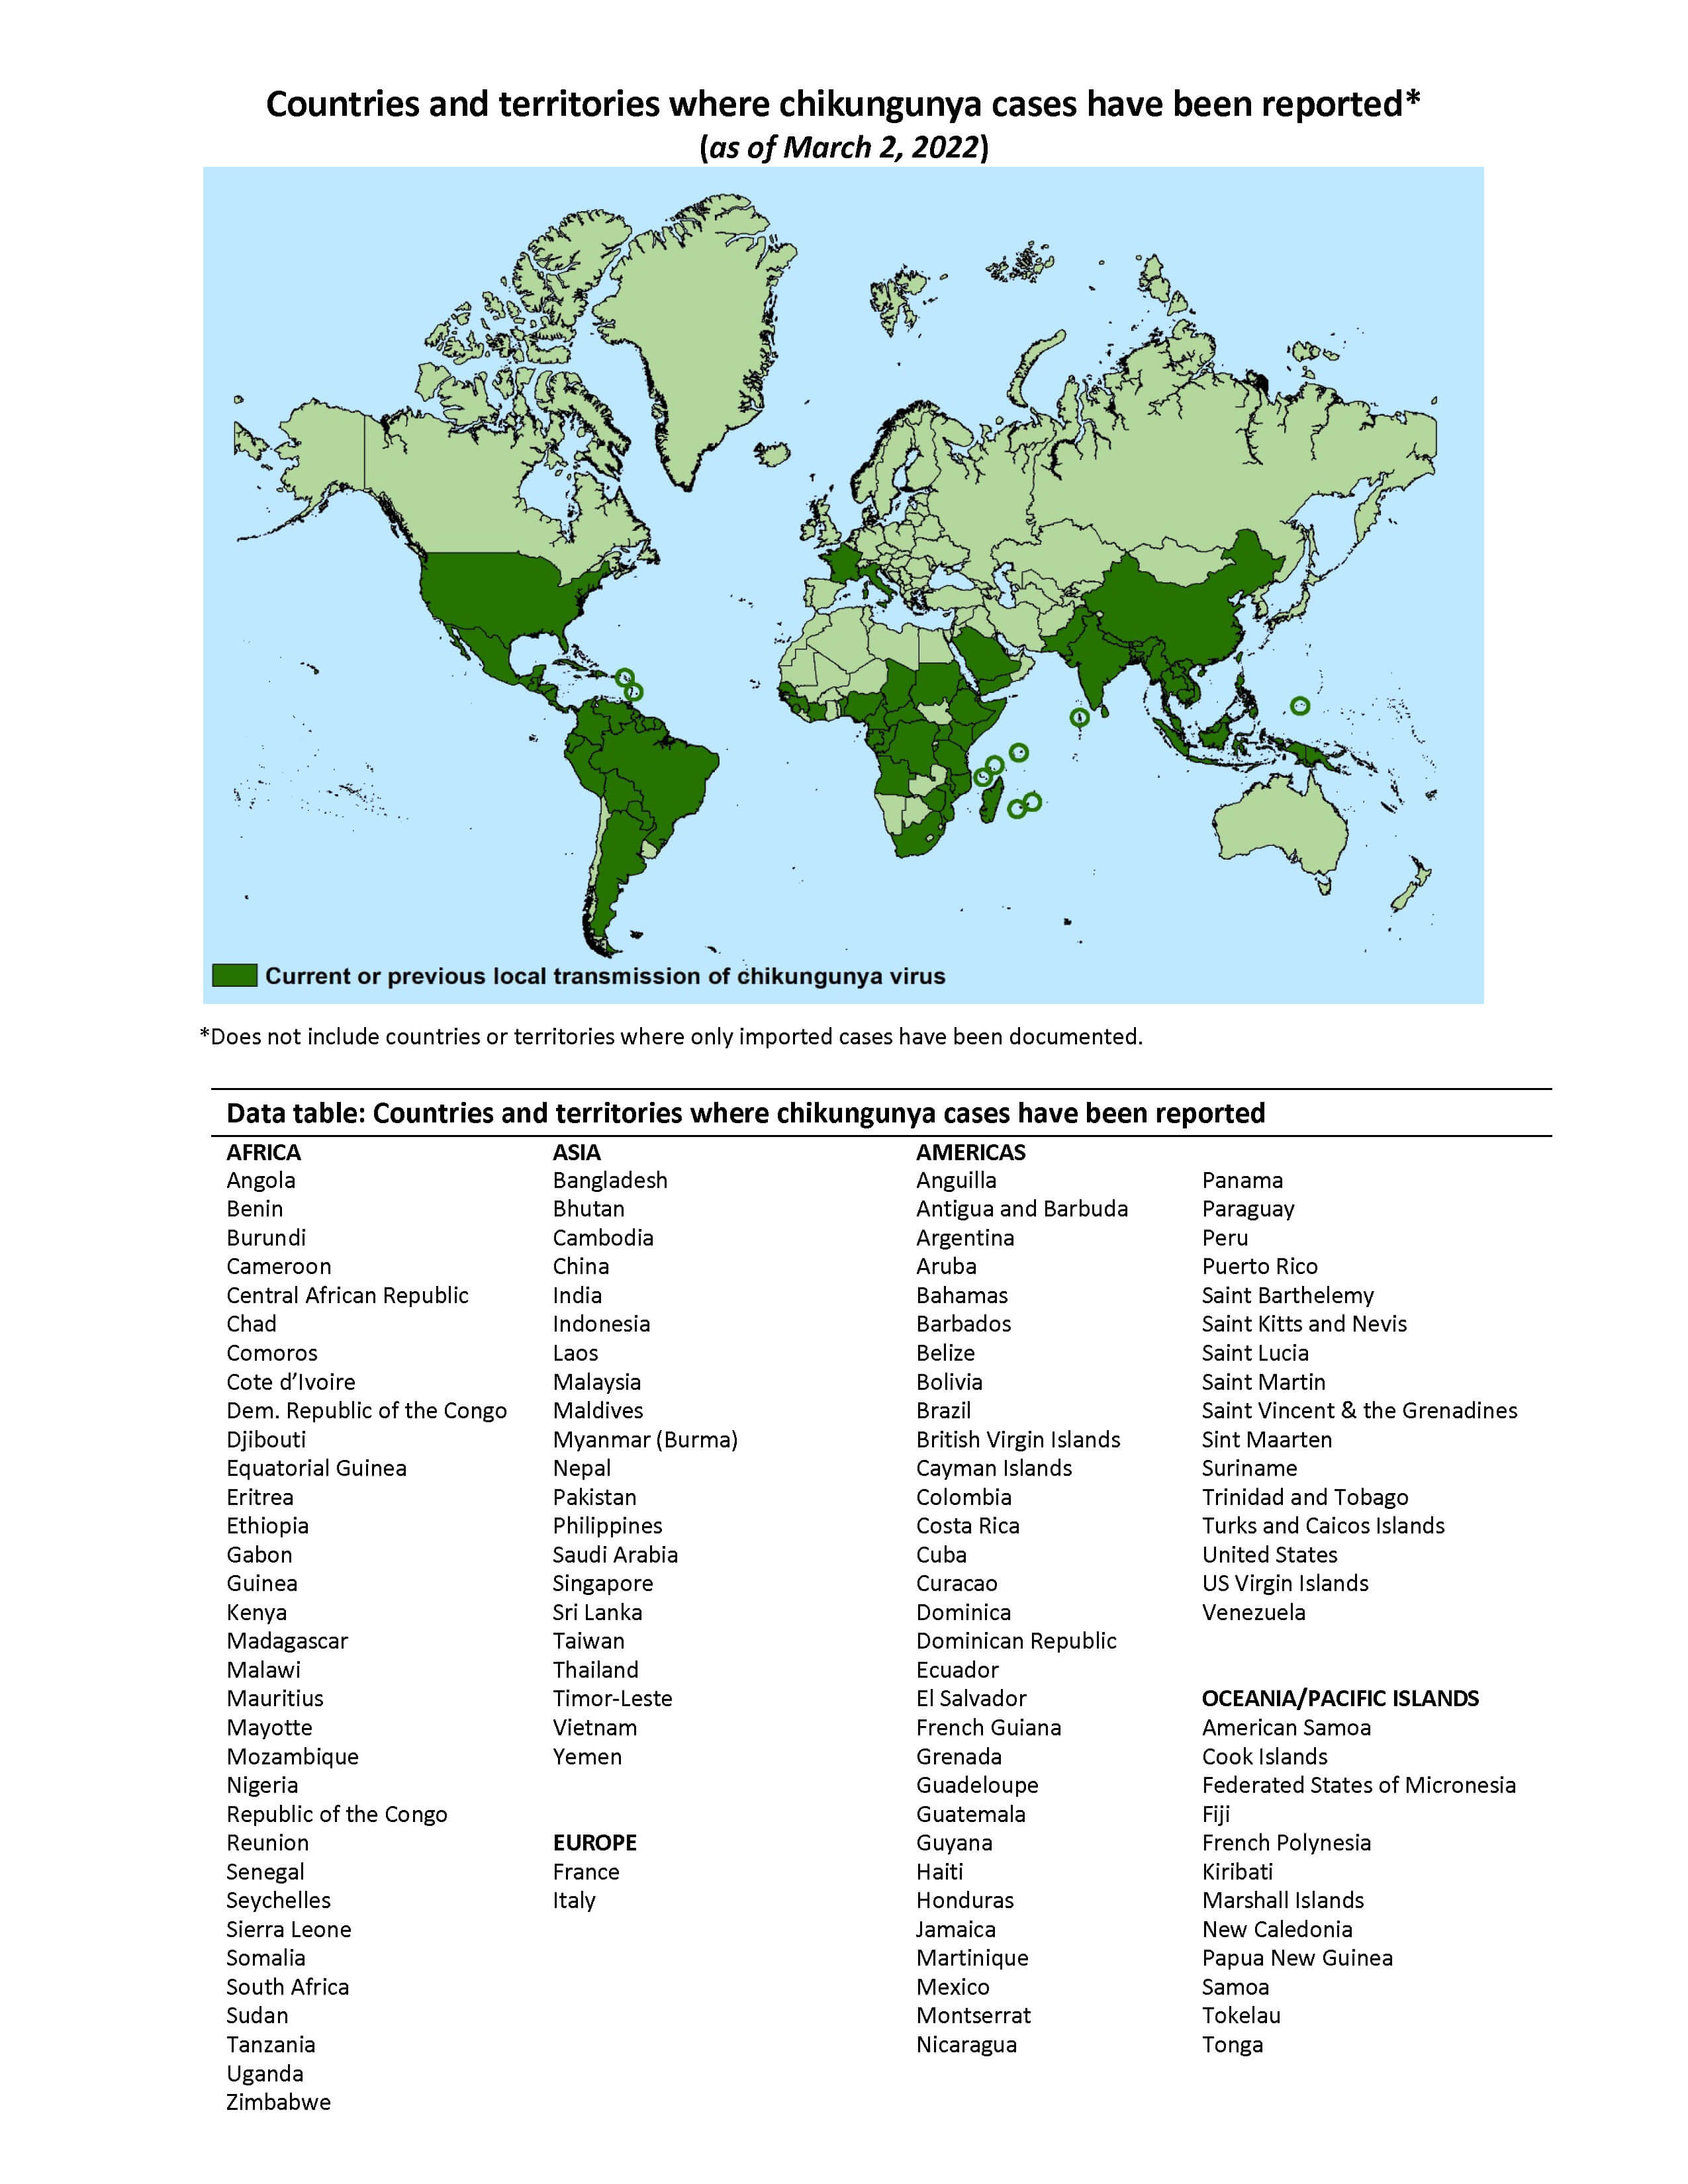 Carte montrant la zone de distribution du chikungunya en vert foncé. ©CDC